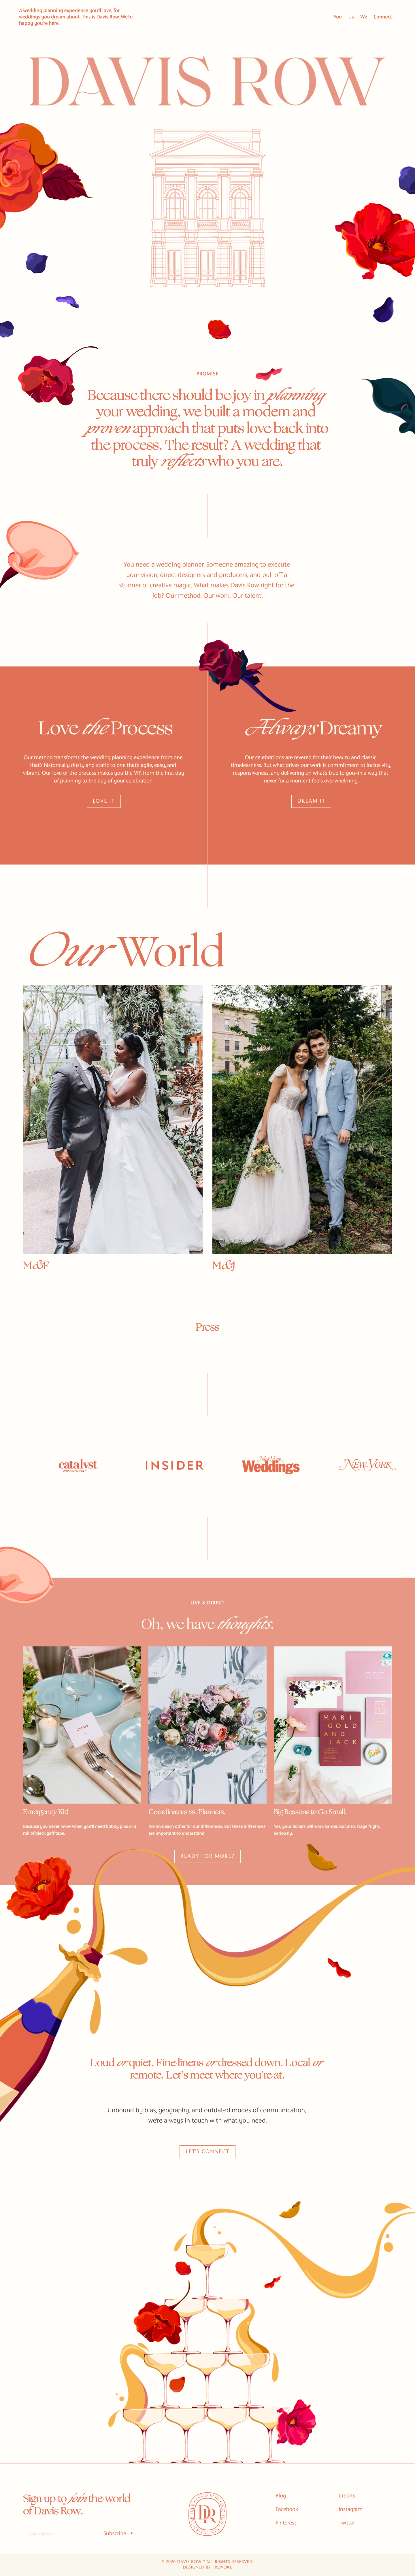 Davis Row婚礼策划公司网站设计